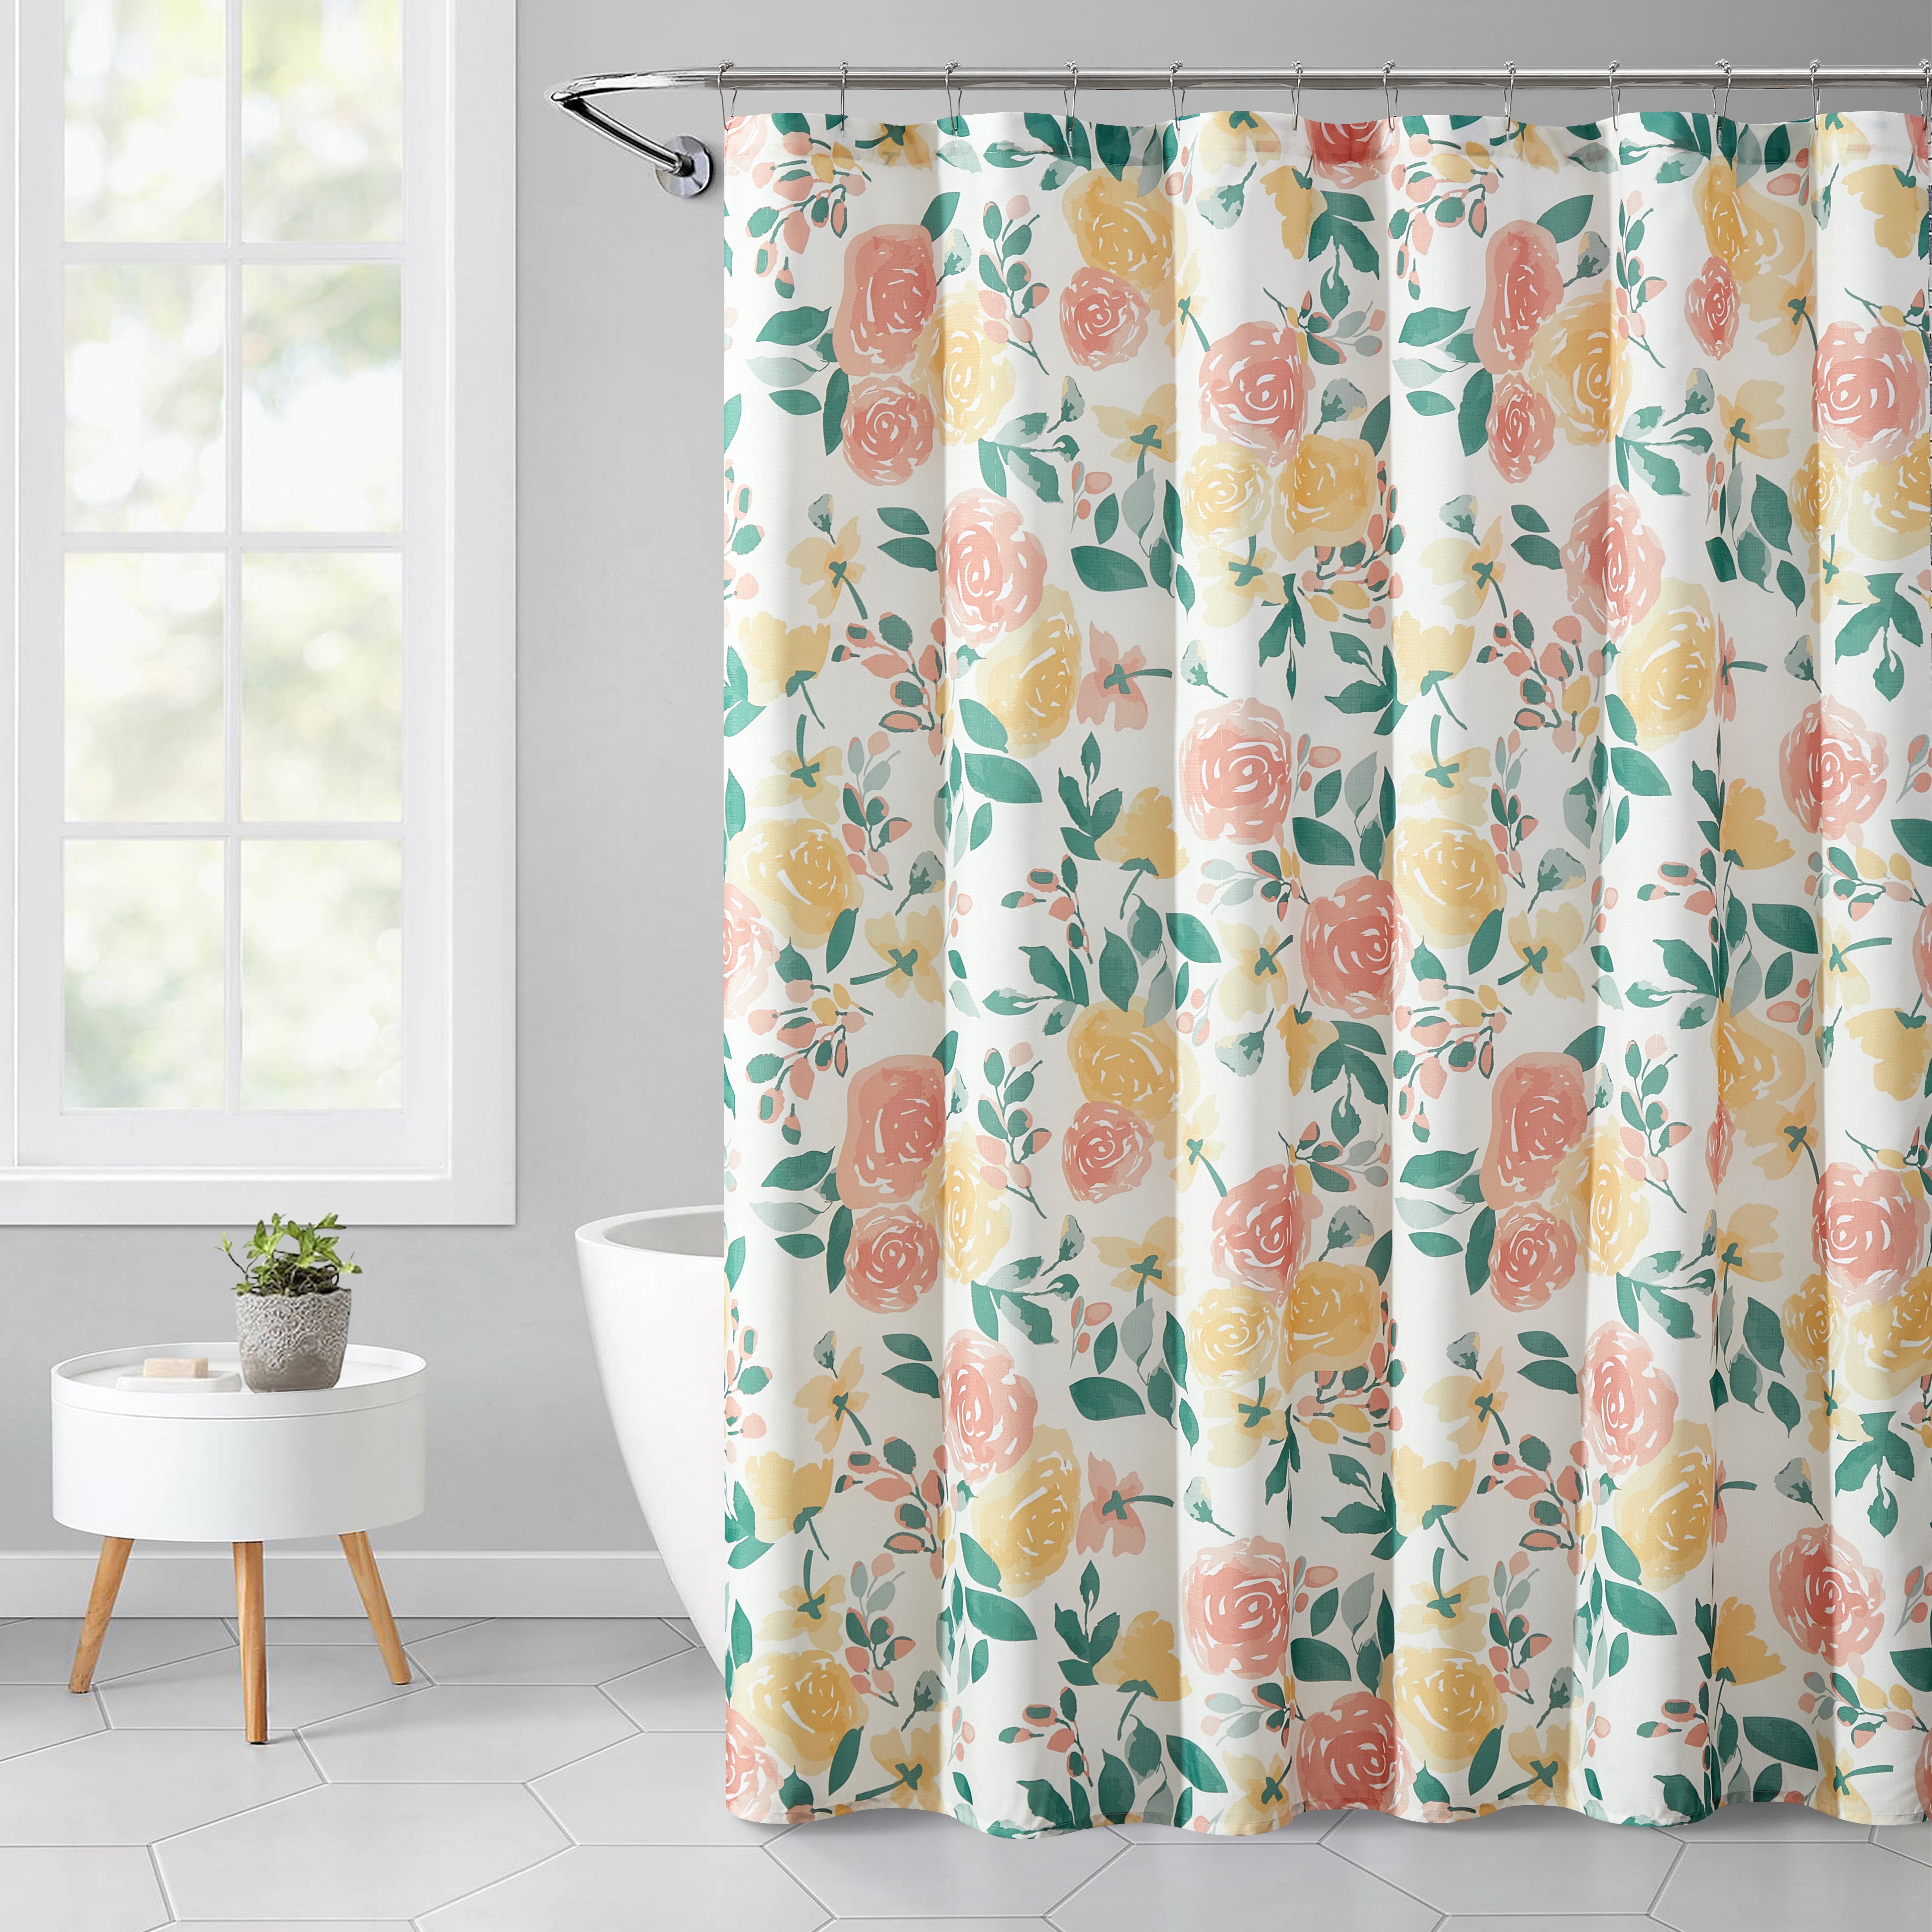 Flowers Horse Waterproof Bathroom Polyester Shower Curtain Liner Water Resistant 